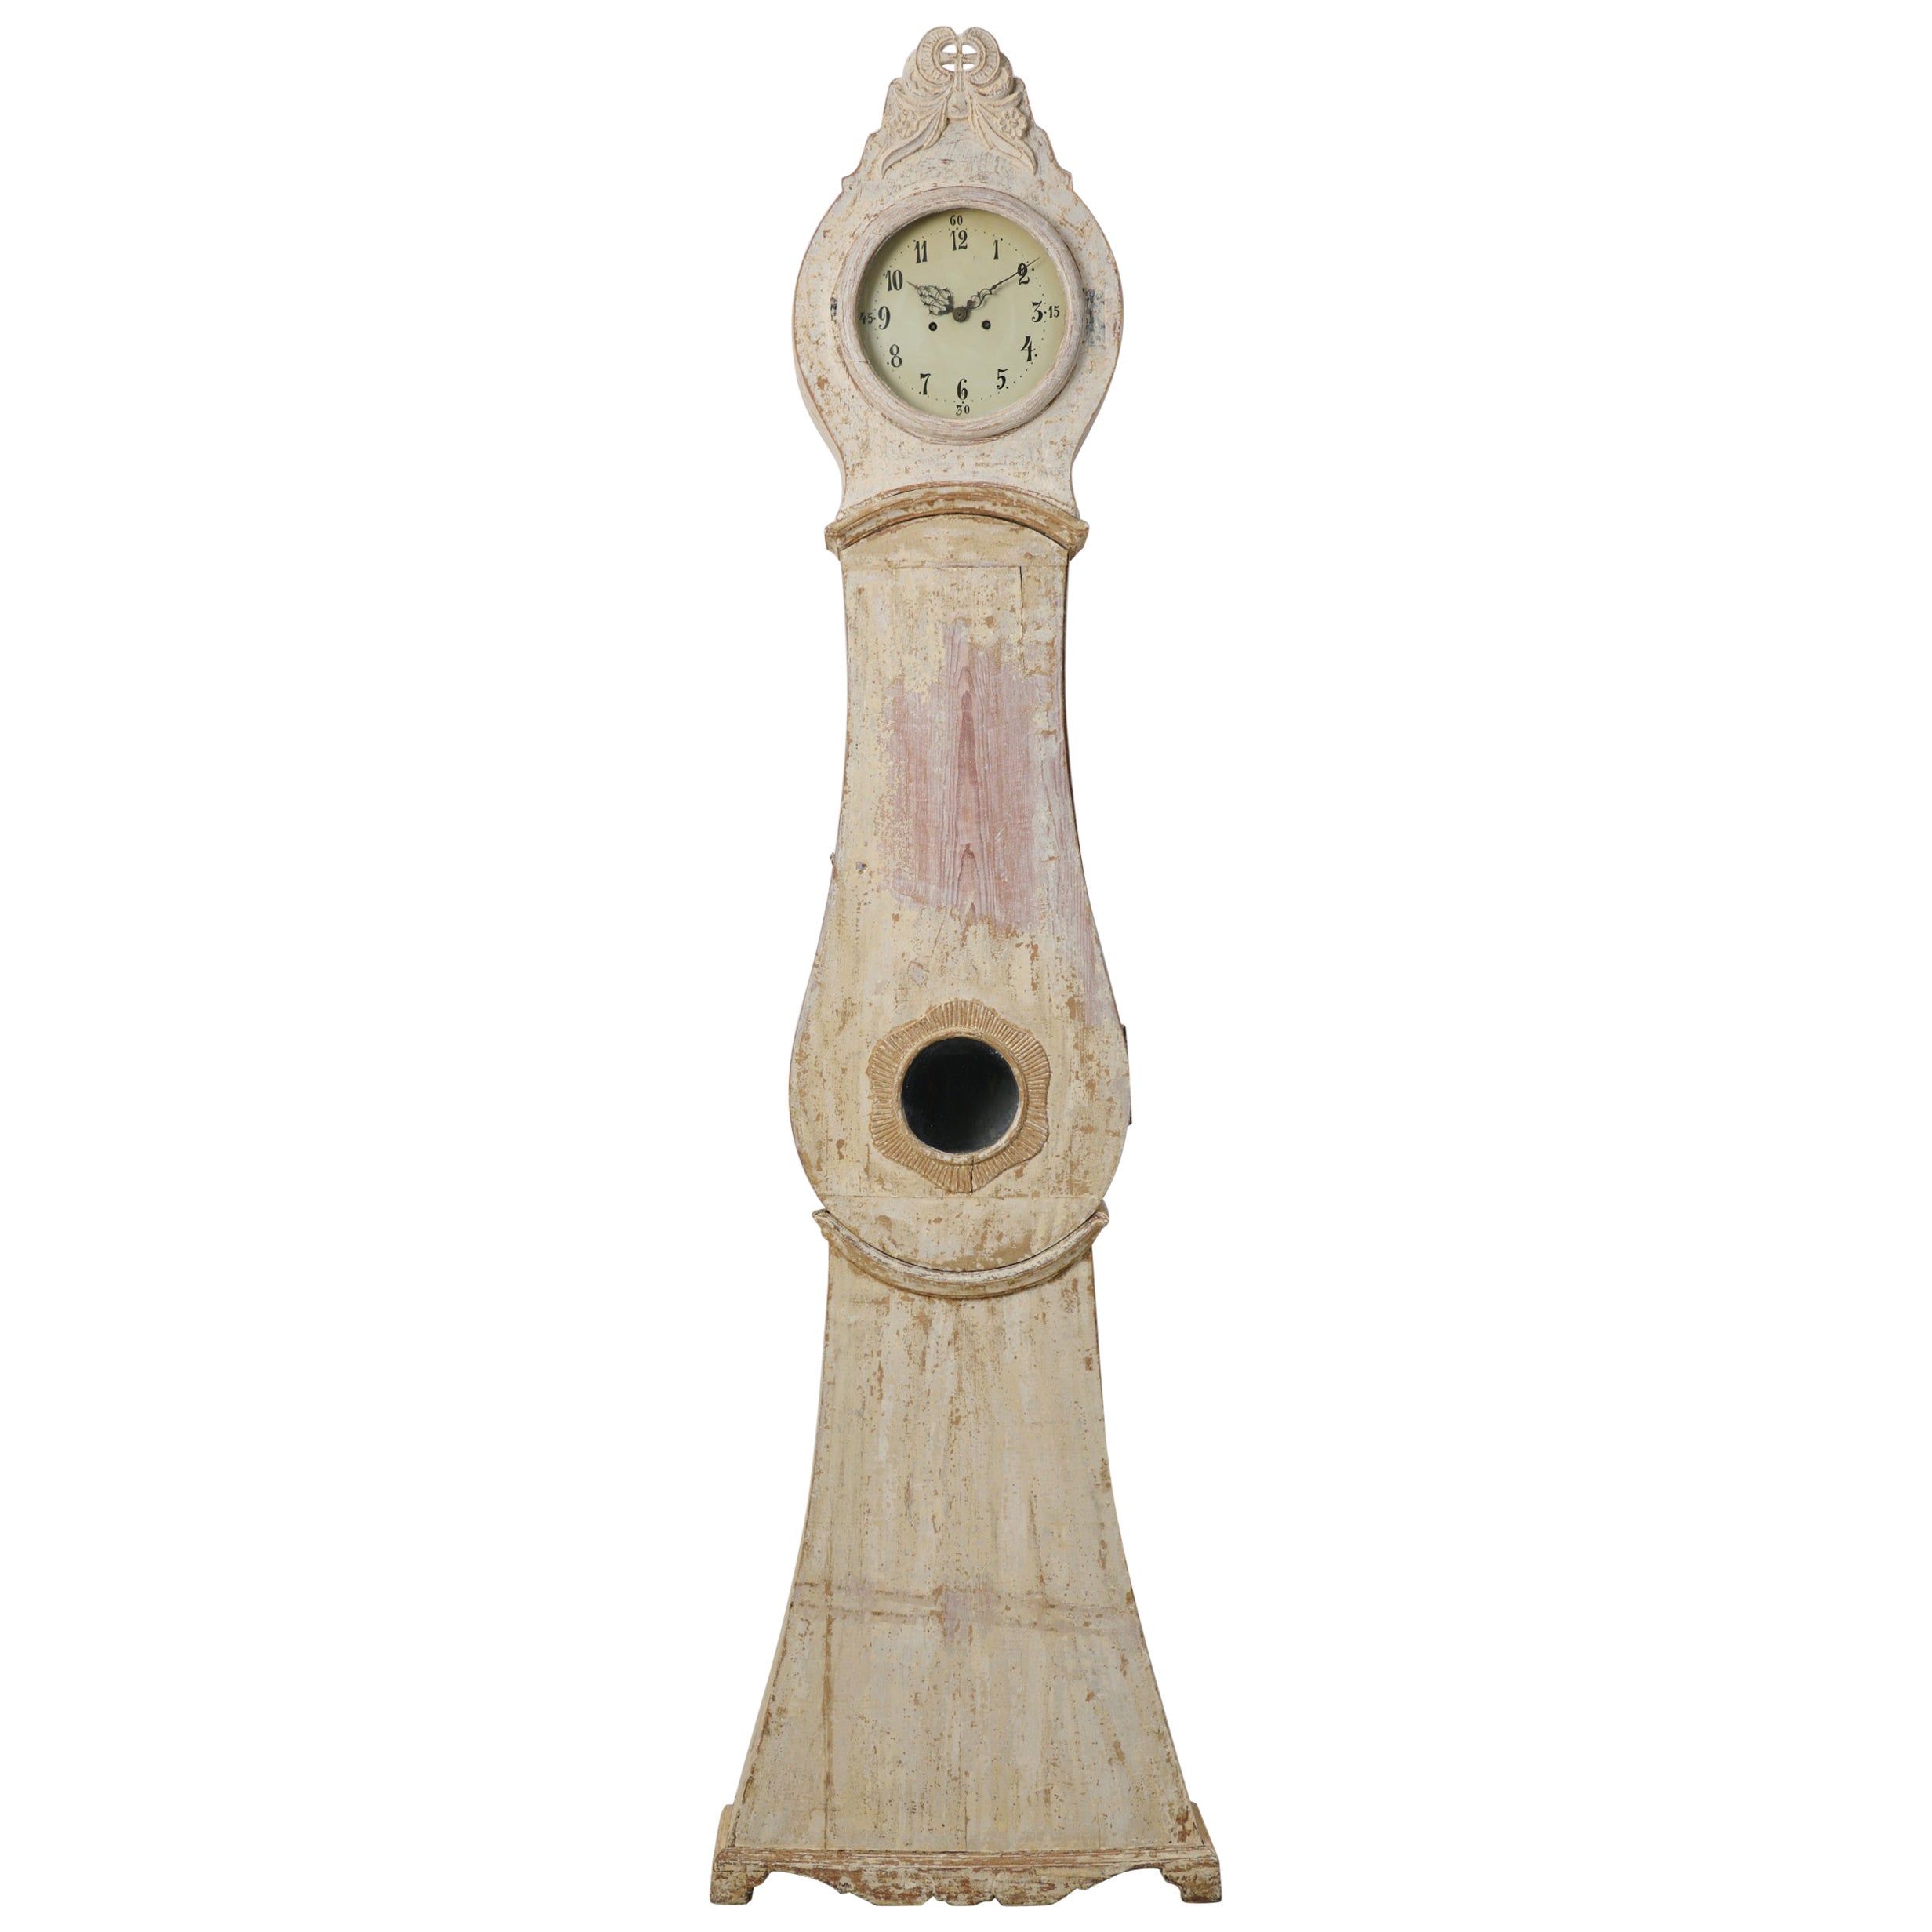 Seltene echte antike nordschwedische hohe Mora-Uhr aus Kiefernholz 